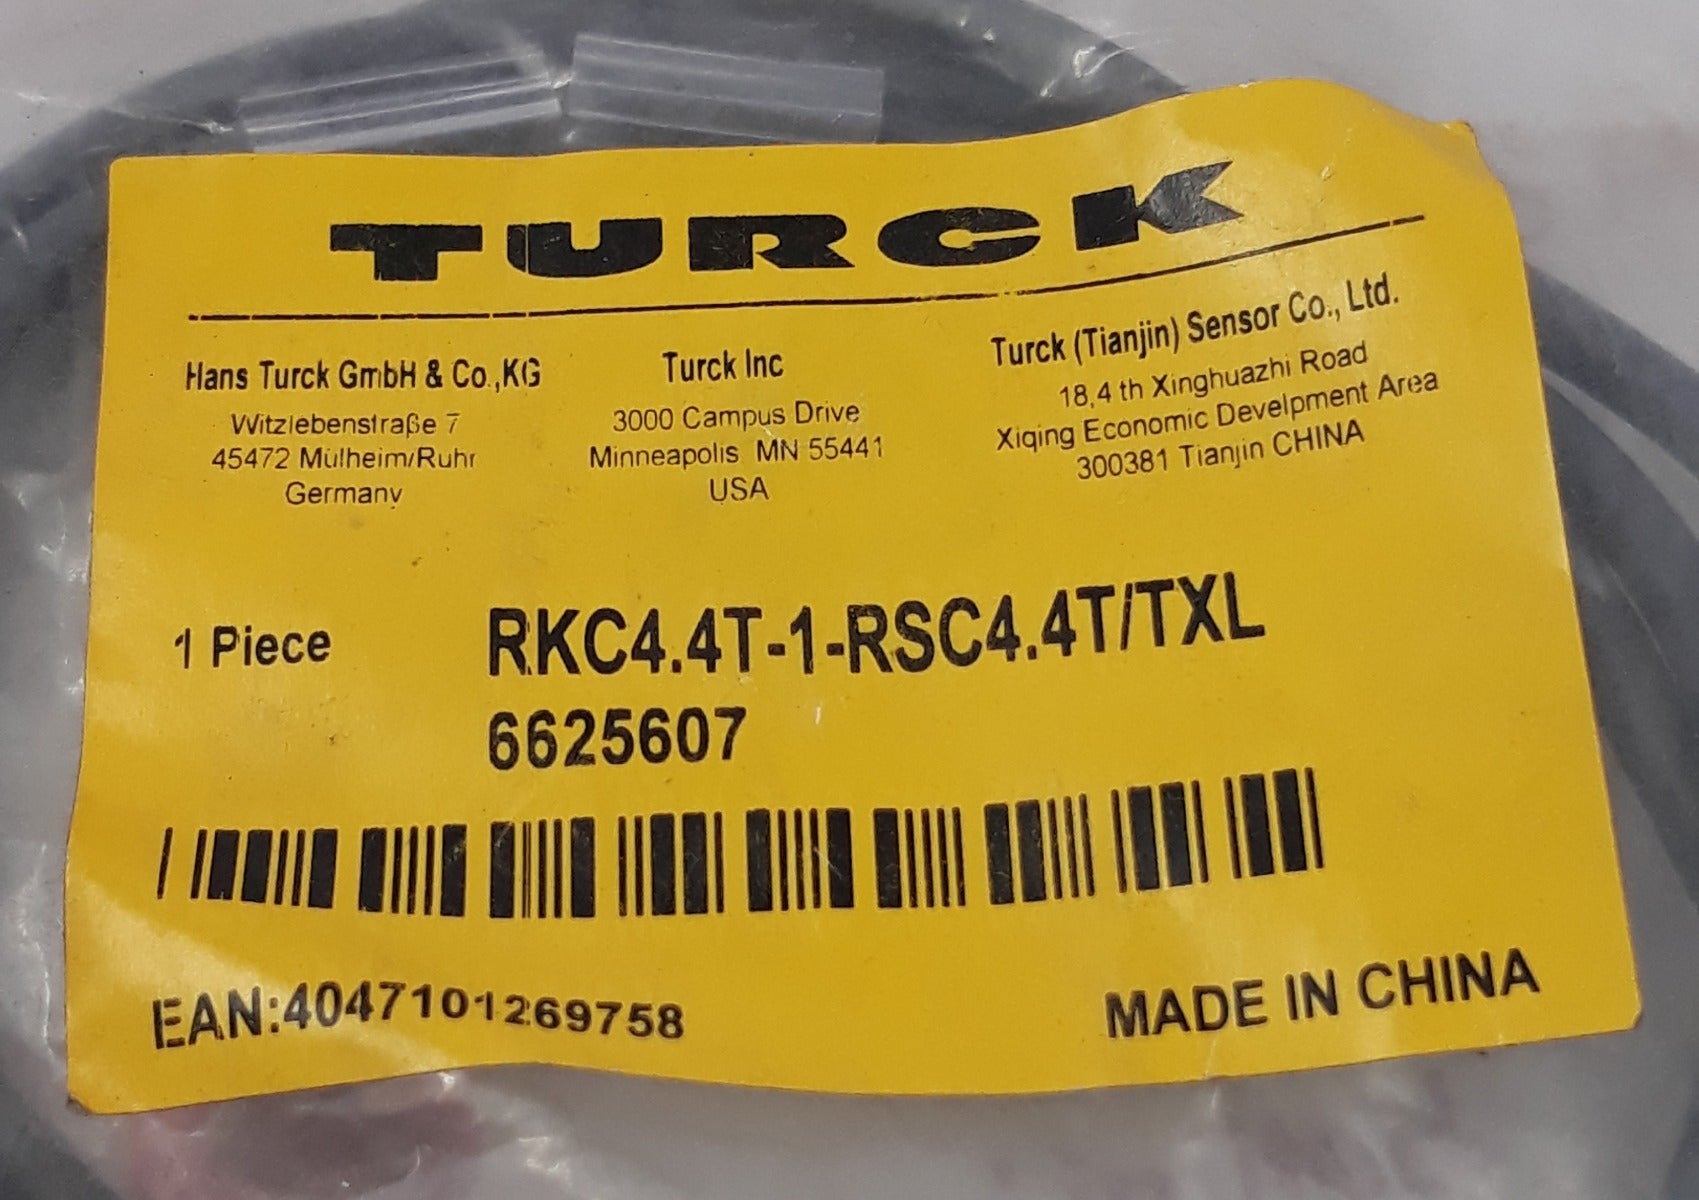 Turck Rkc4-4T-1-rsc4.4T/Txl Cordset